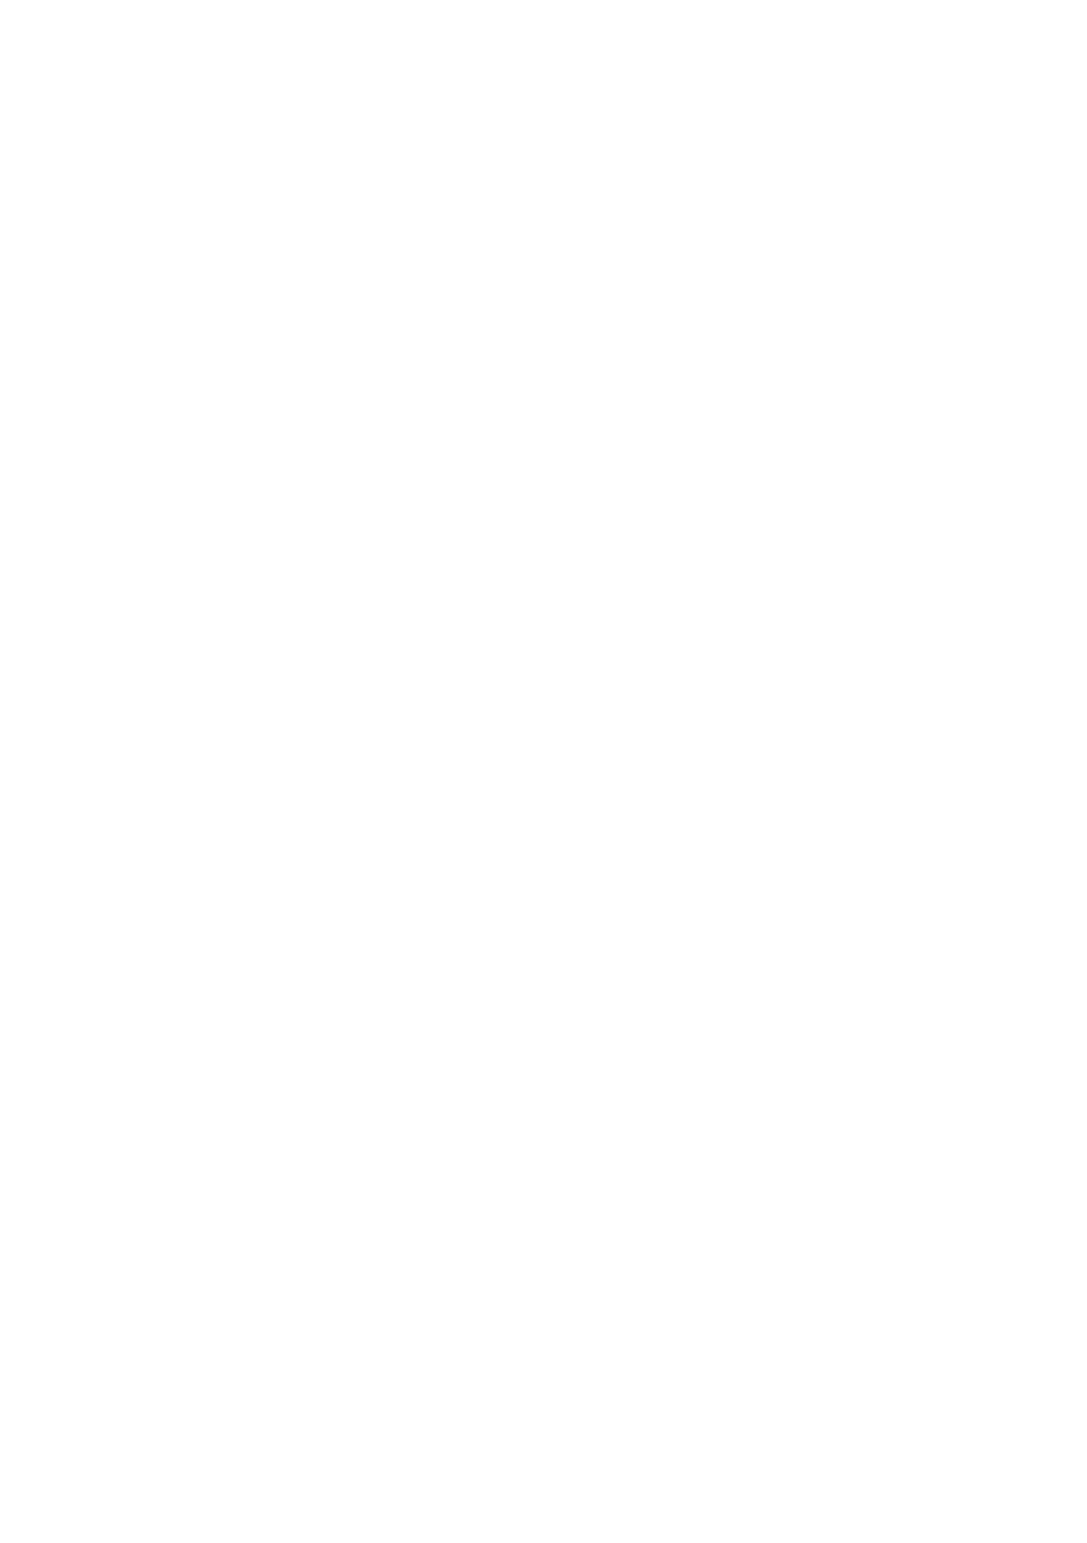 Sandoz Group logo for dark backgrounds (transparent PNG)